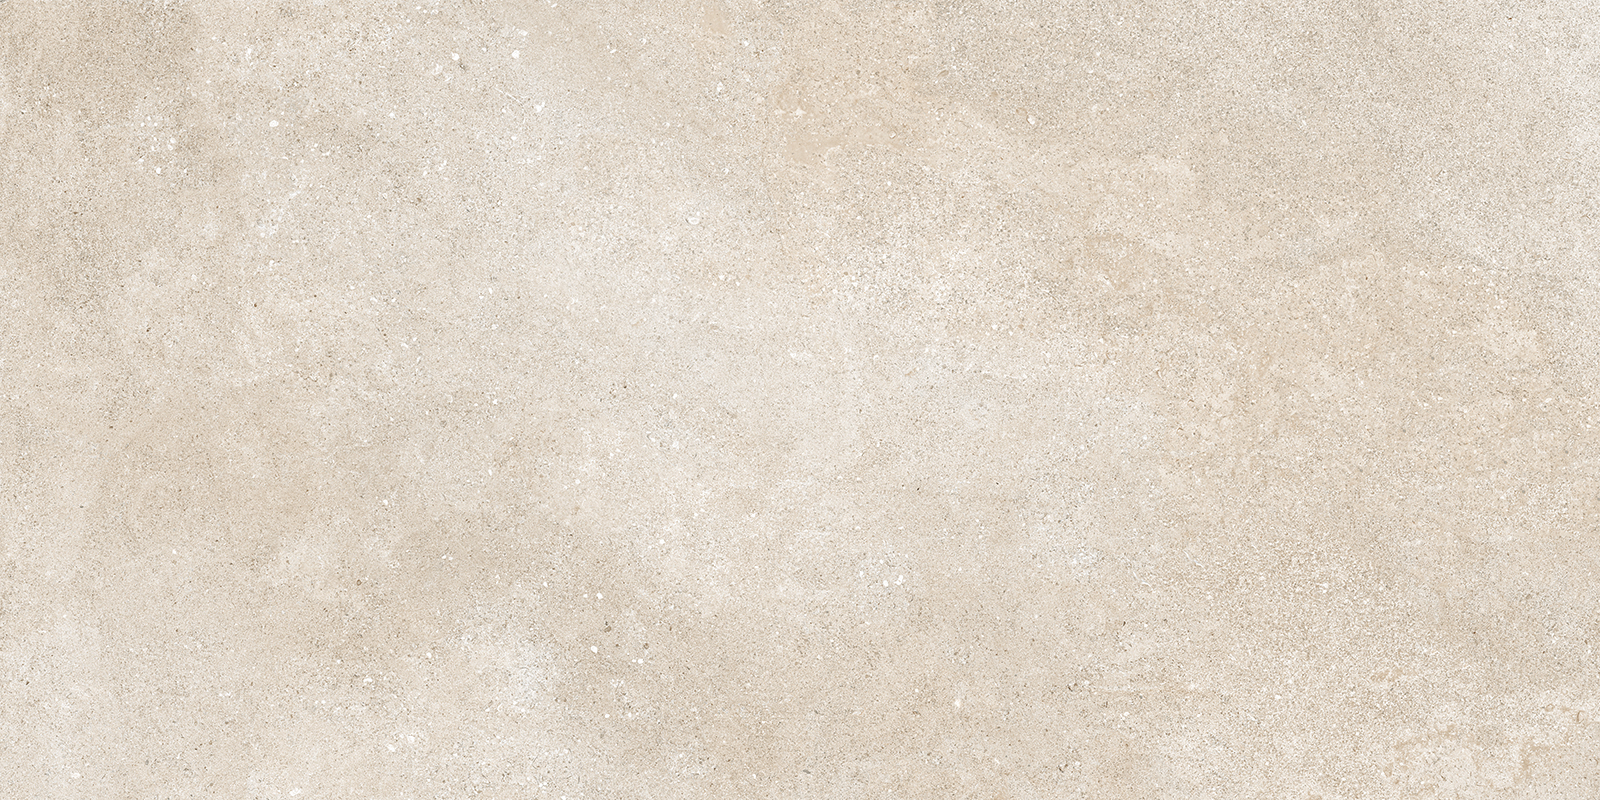 Carrelage aspect pierre beige nuancé de textures naturelles, dimensions 60x120 cm